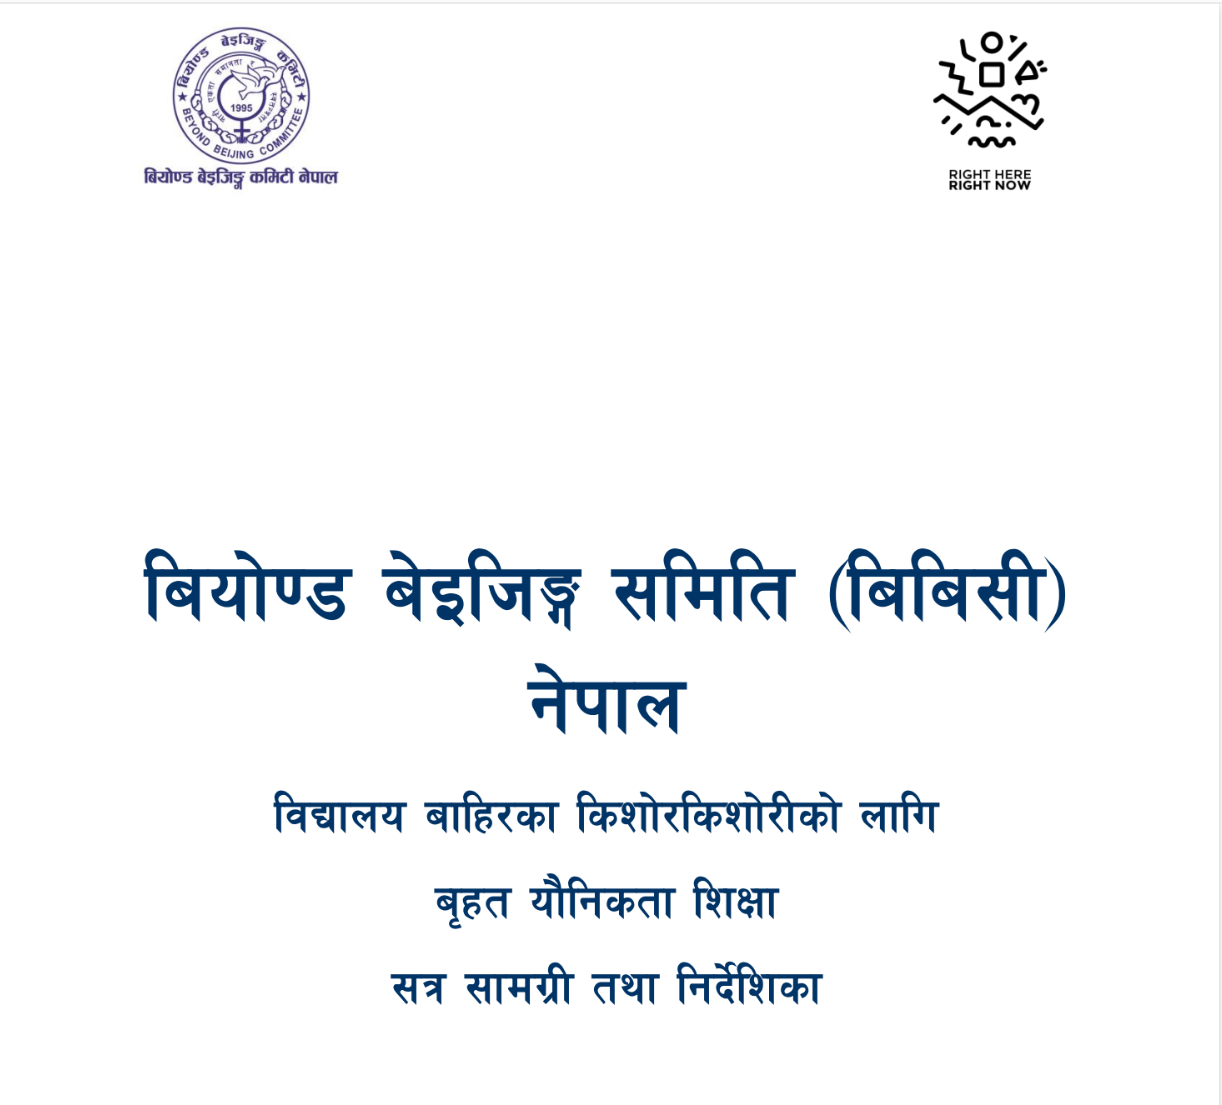 बियोण्ड बेइजिङ्ग समिति (बिबिसी) नेपाल विद्यालय बाहिरका किशोरकिशोरीको लागि बृहत यौनिकता शिक्षा सत्र सामग्री तथा निर्देशिका